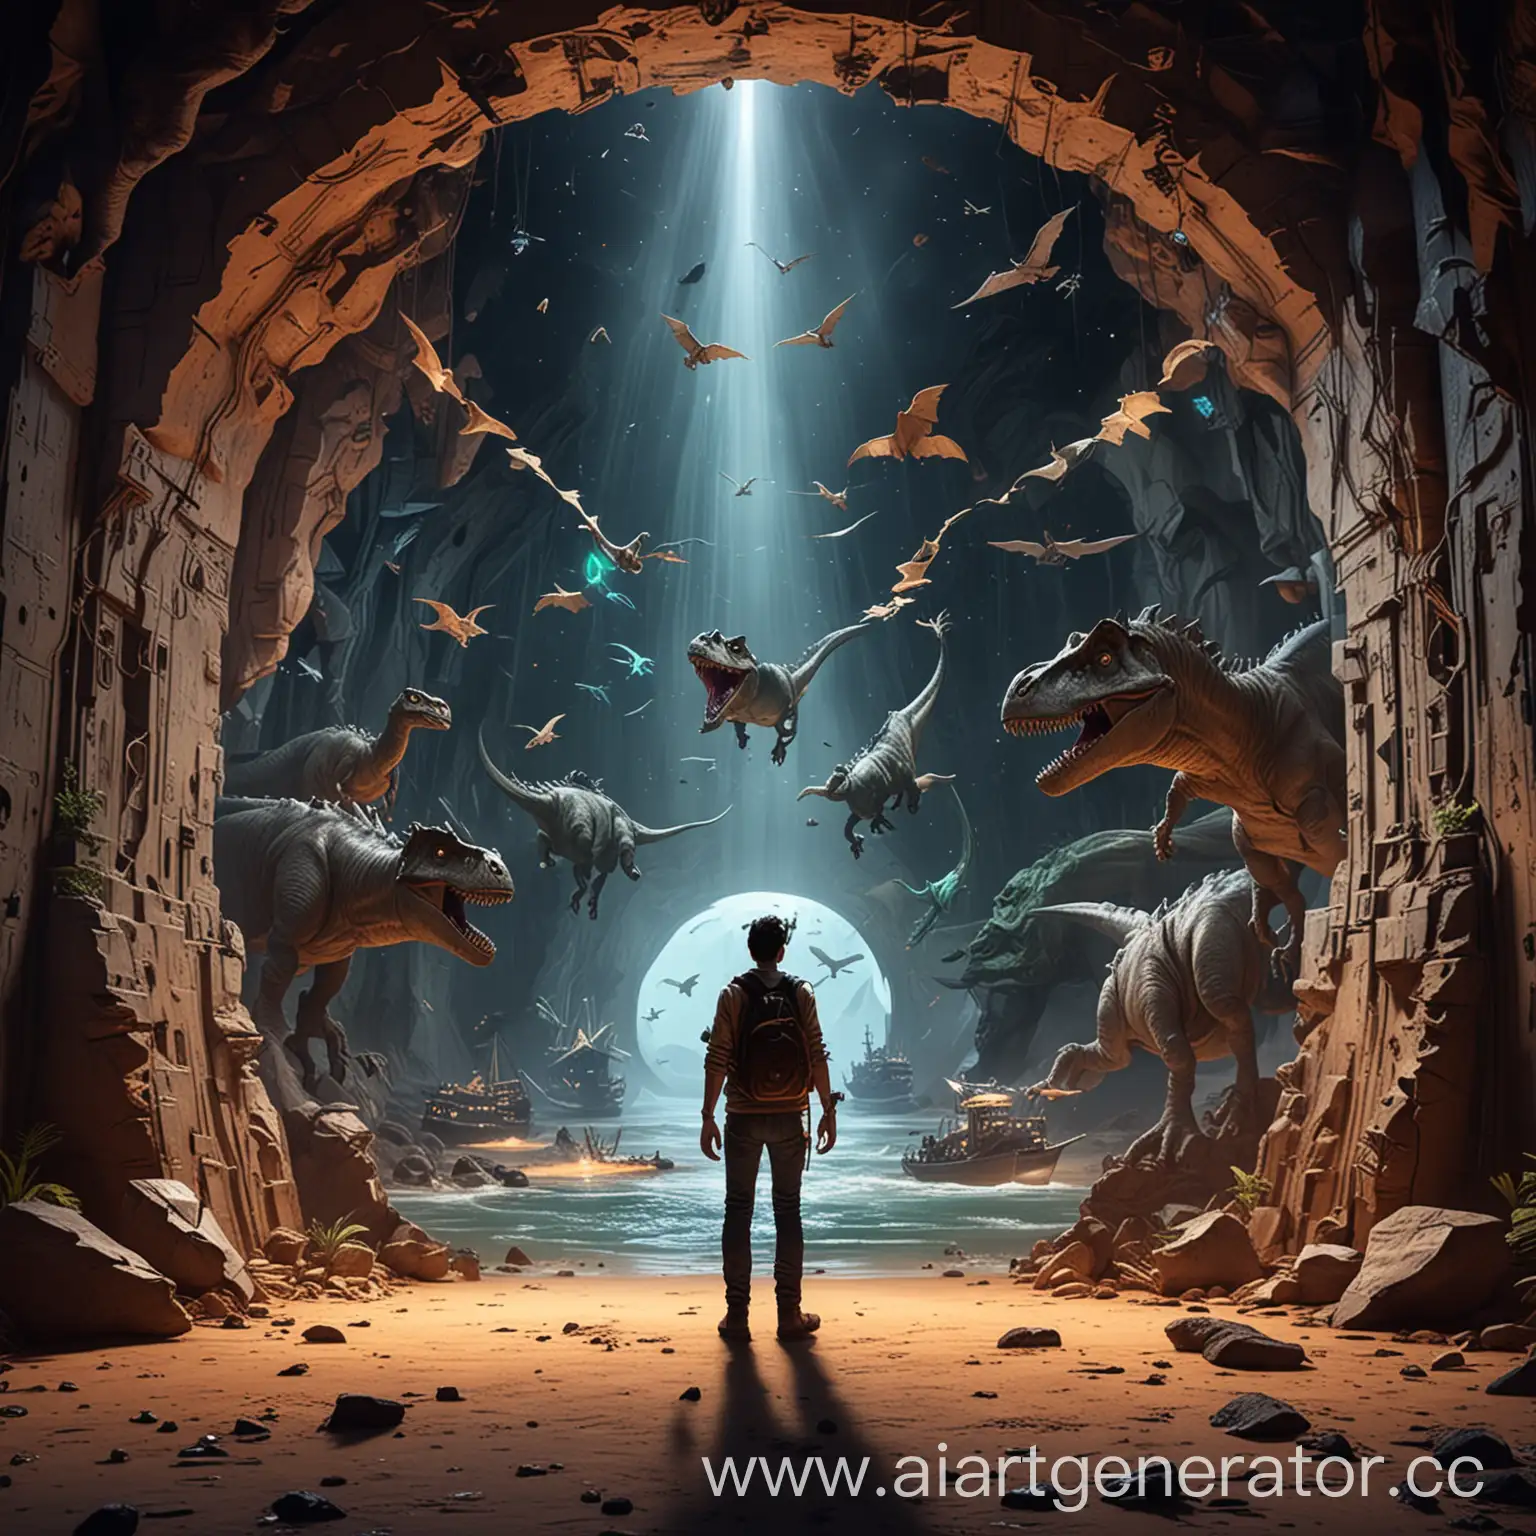 человек играя в виртуальном клубе открыл портал с новым миром, где летают корабли и динозавры